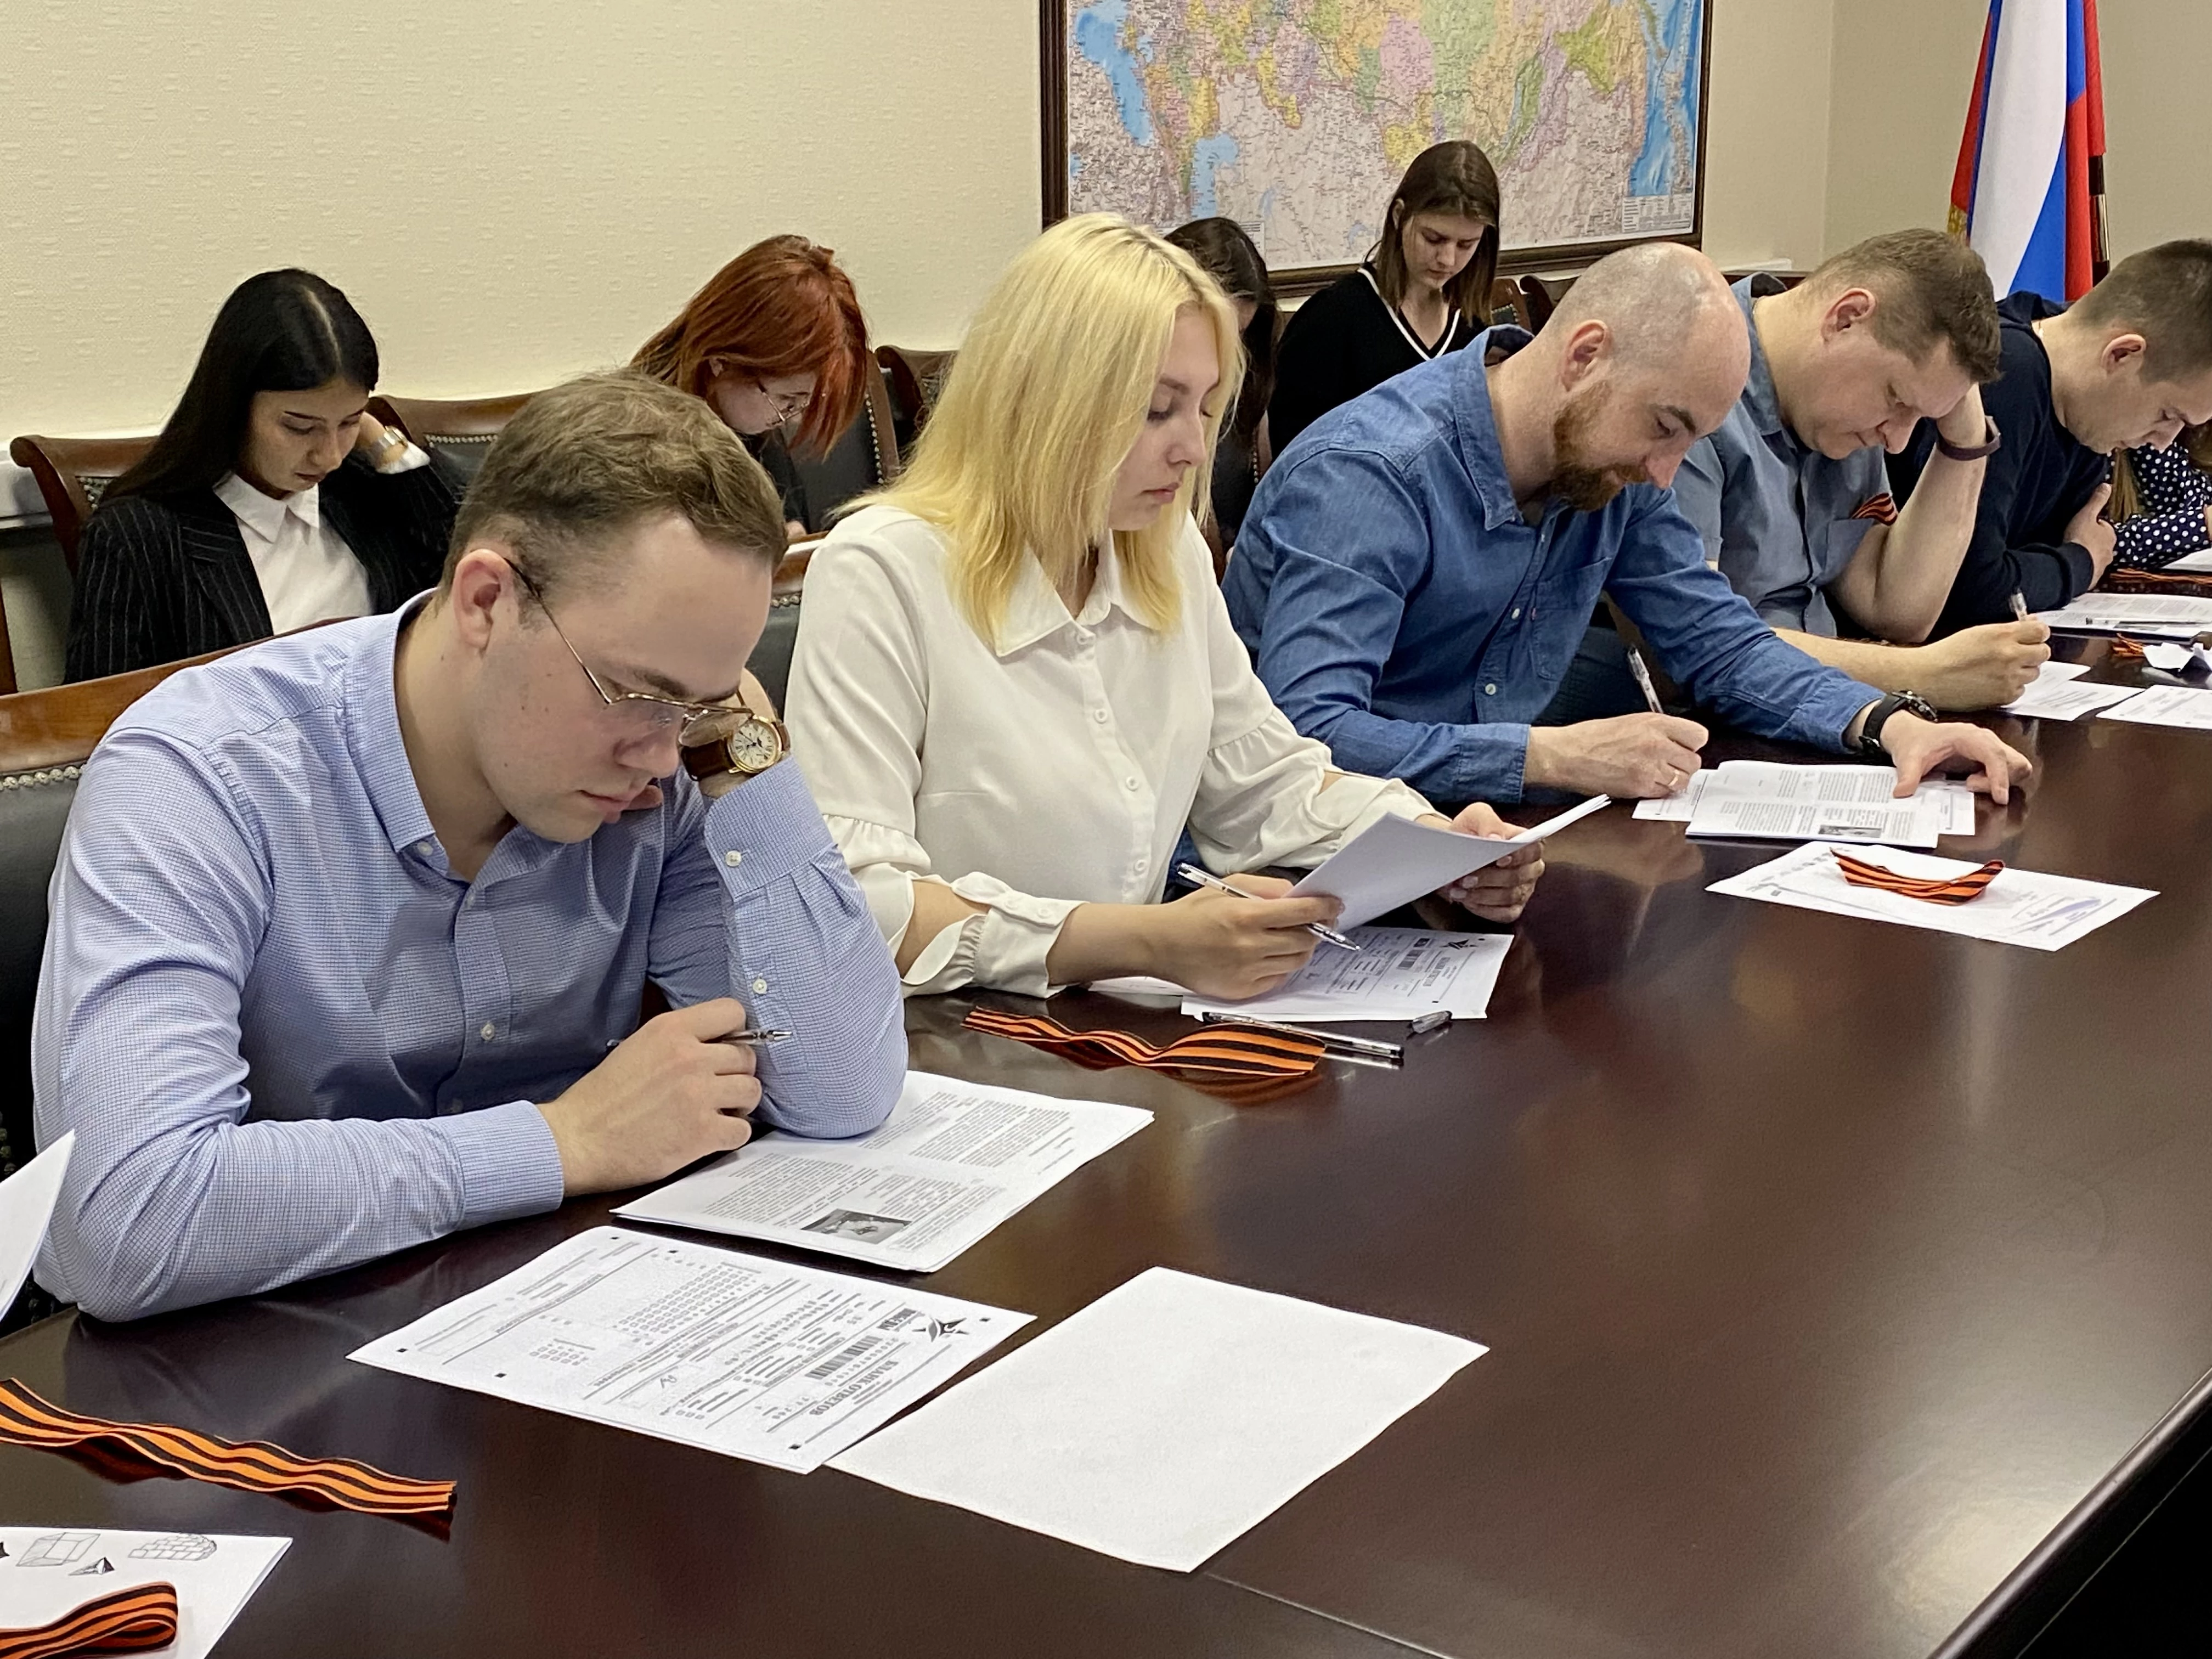 Сотрудники Росгранстроя приняли участие в патриотической акции «Диктант Победы»